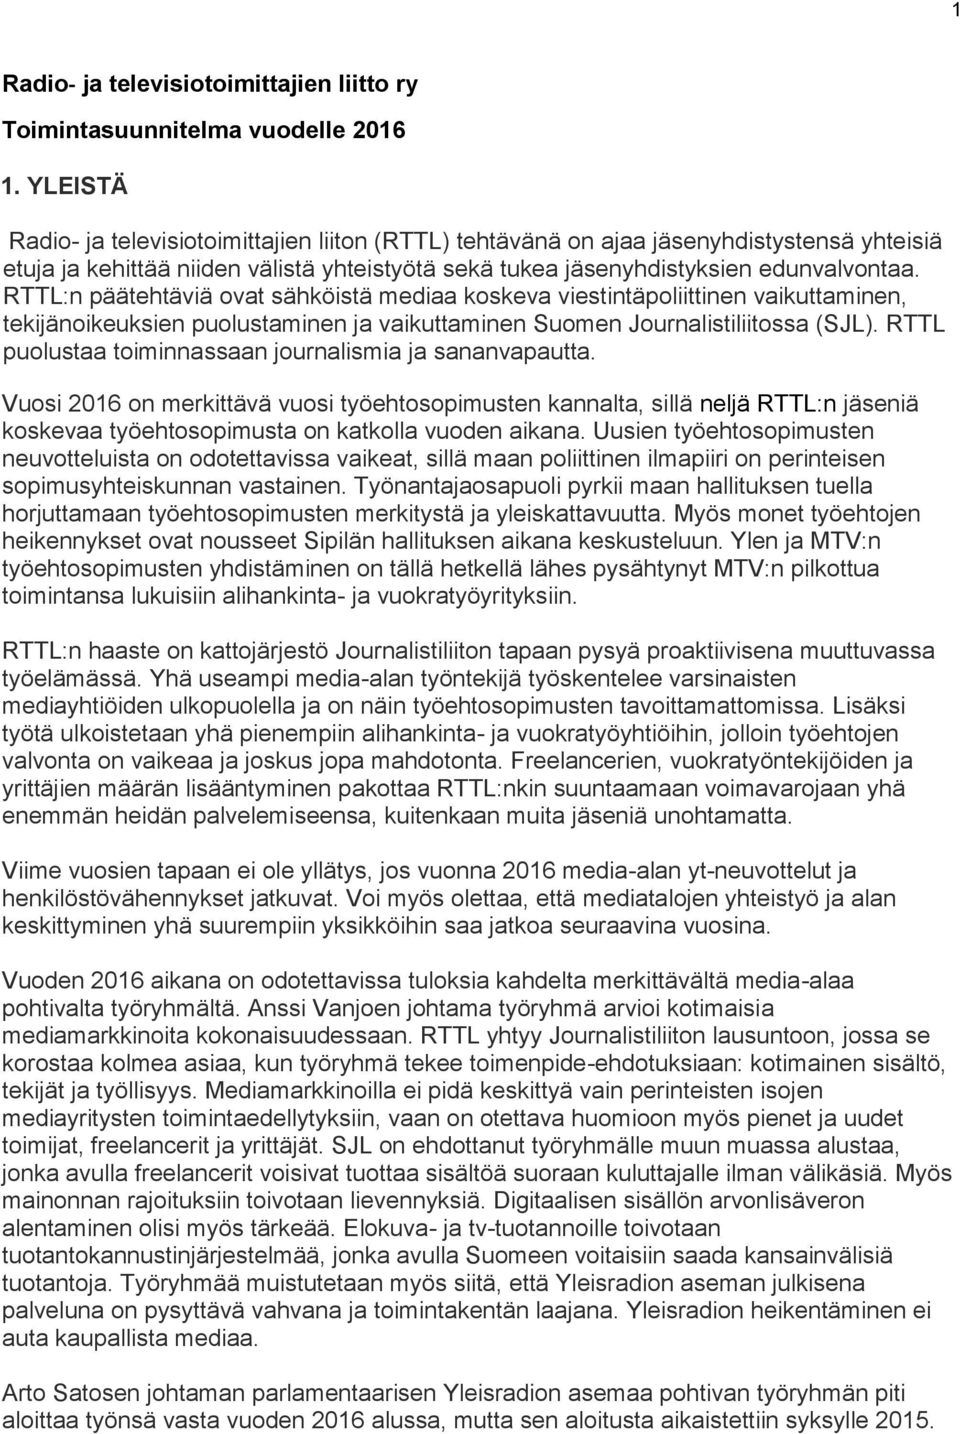 RTTL:n päätehtäviä ovat sähköistä mediaa koskeva viestintäpoliittinen vaikuttaminen, tekijänoikeuksien puolustaminen ja vaikuttaminen Suomen Journalistiliitossa (SJL).